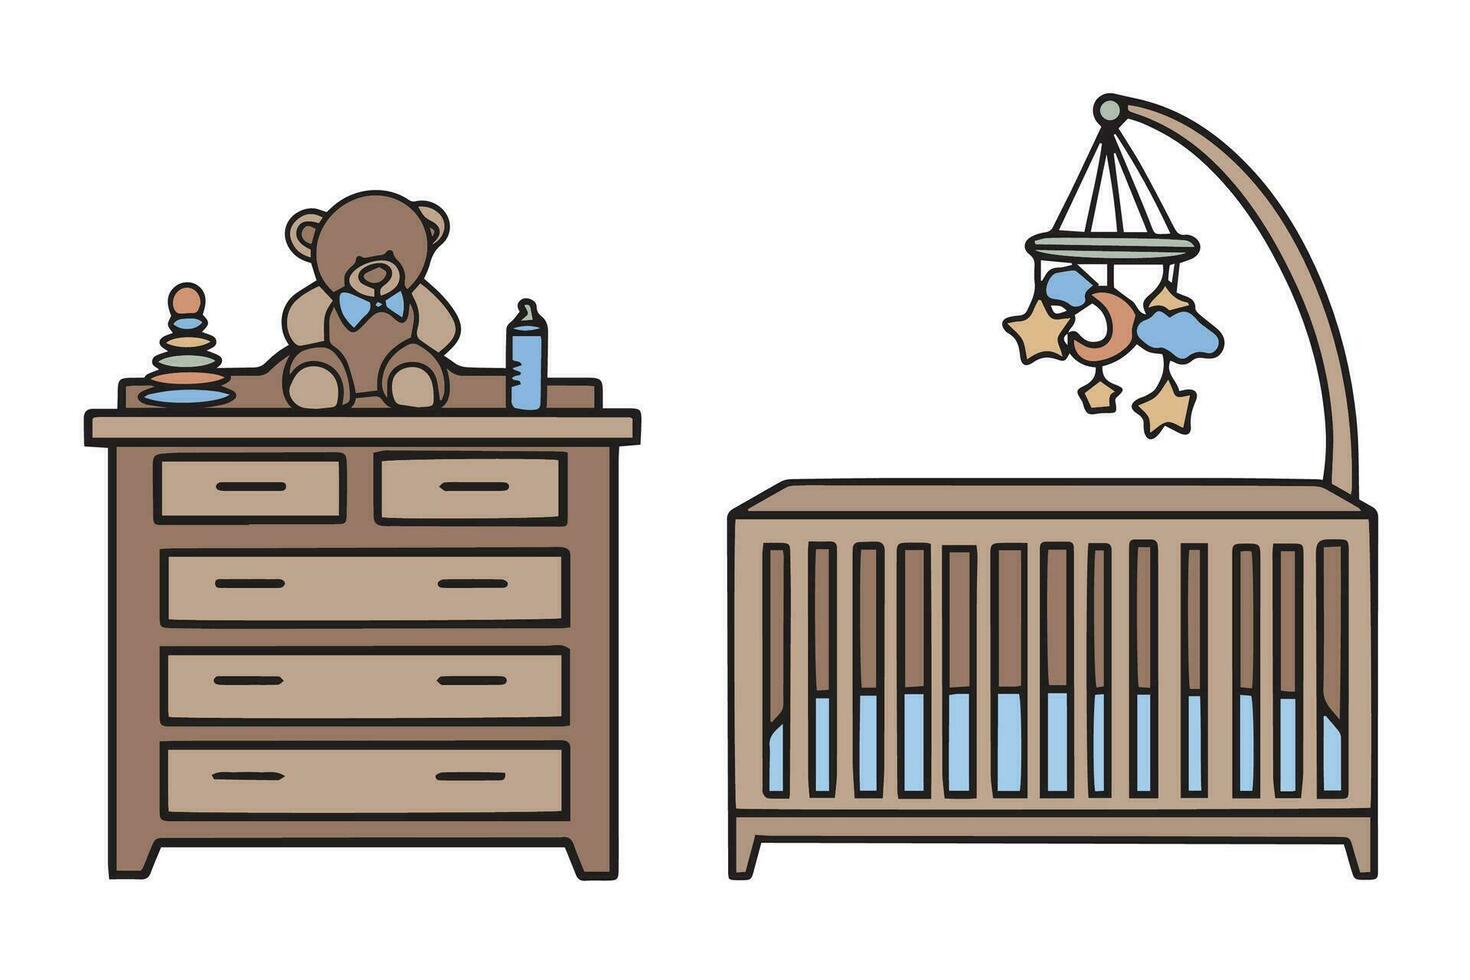 meubilair voor een kinderen kamer. wieg, speelgoed en borst van laden met speelgoed. tekening illustratie. vector